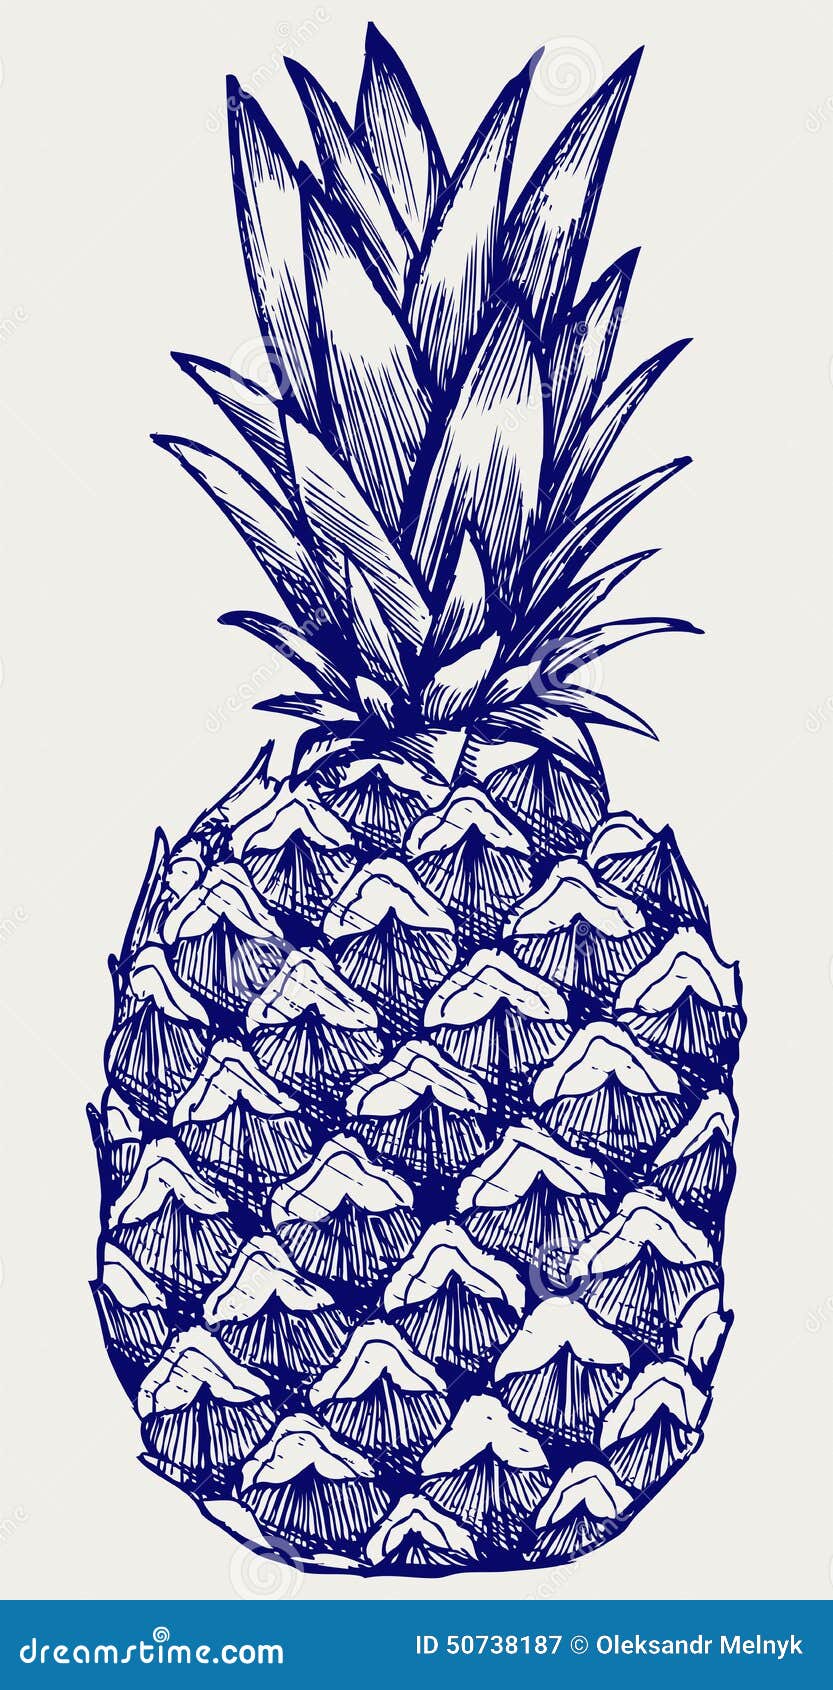 ripe tasty pineapple